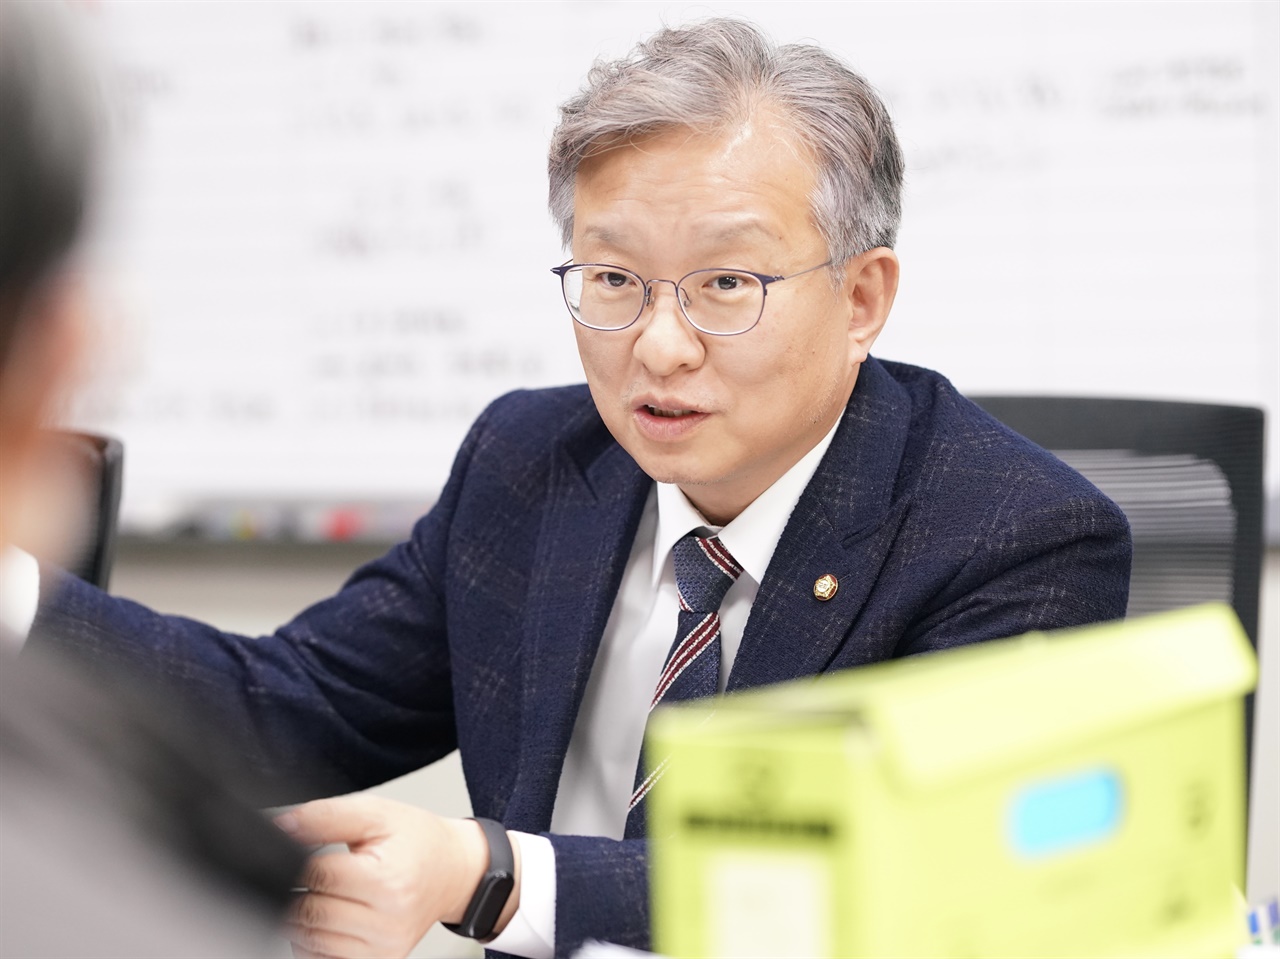 오마이뉴스와 인터뷰 중인 권칠승 의원(경기도 화성병)